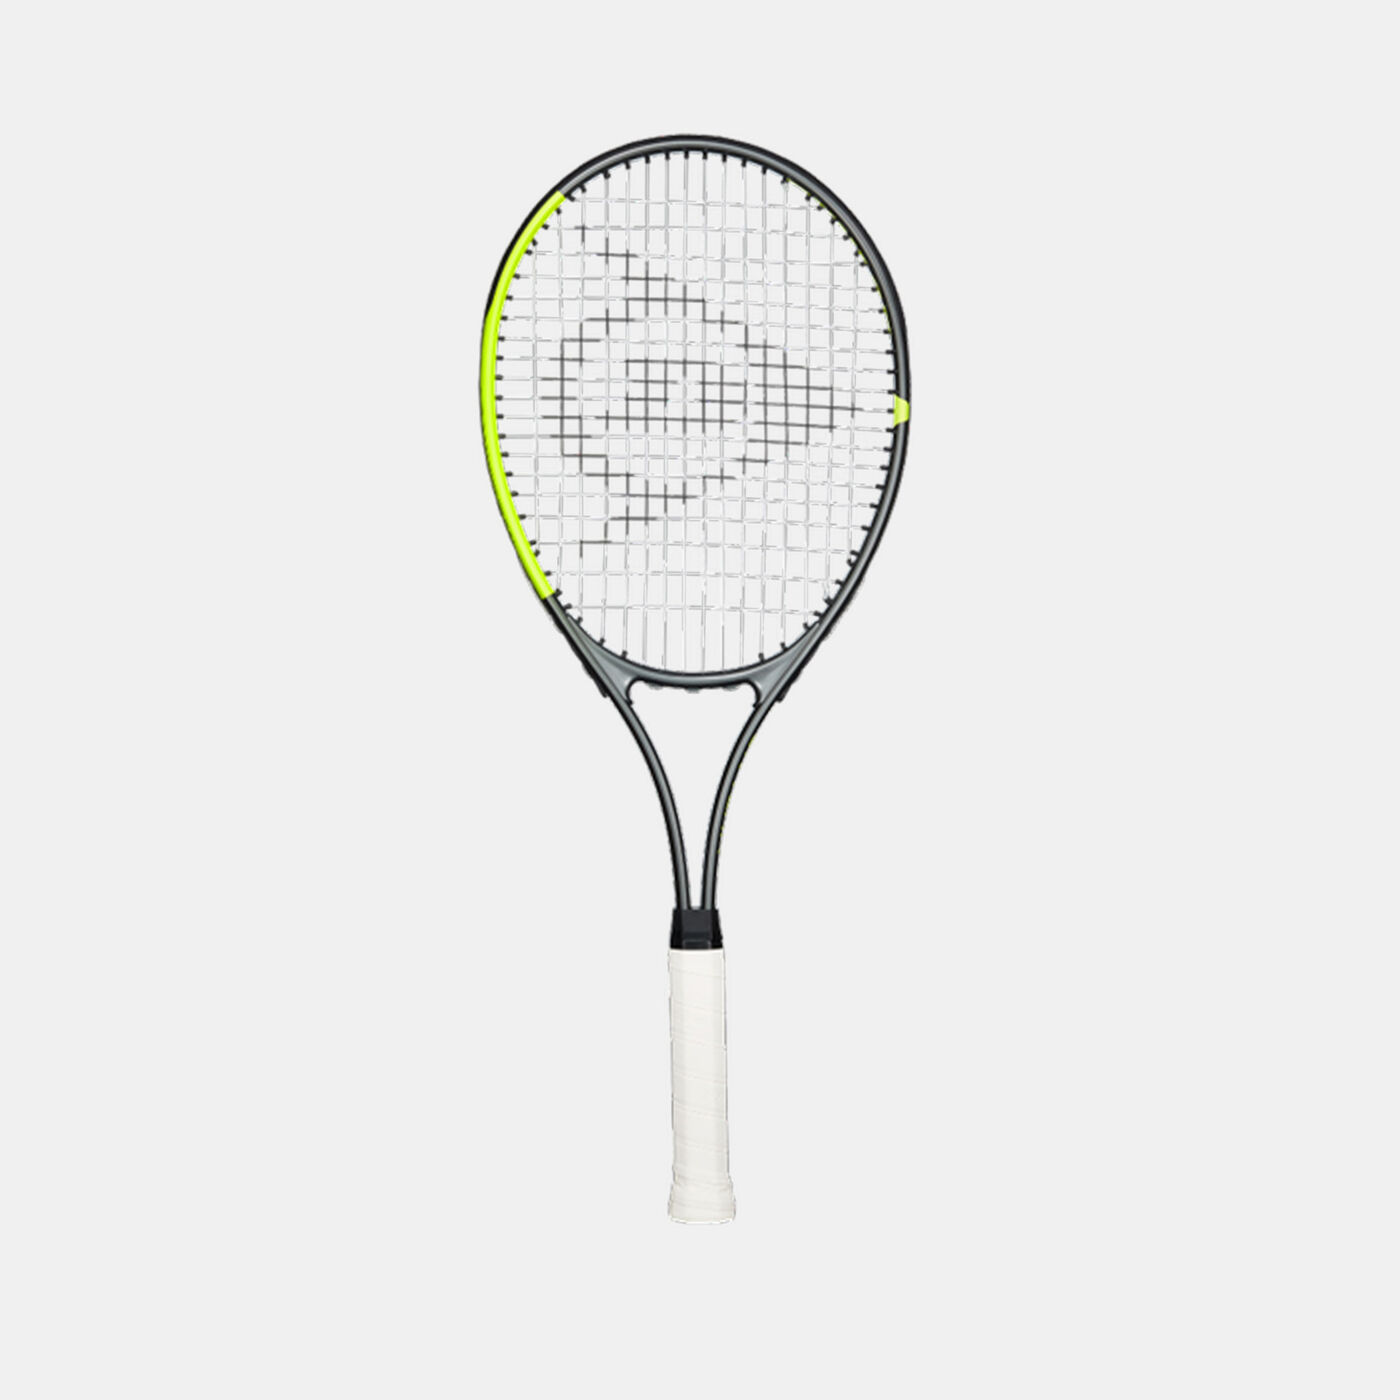 SX 27 G2 Tennis Racket